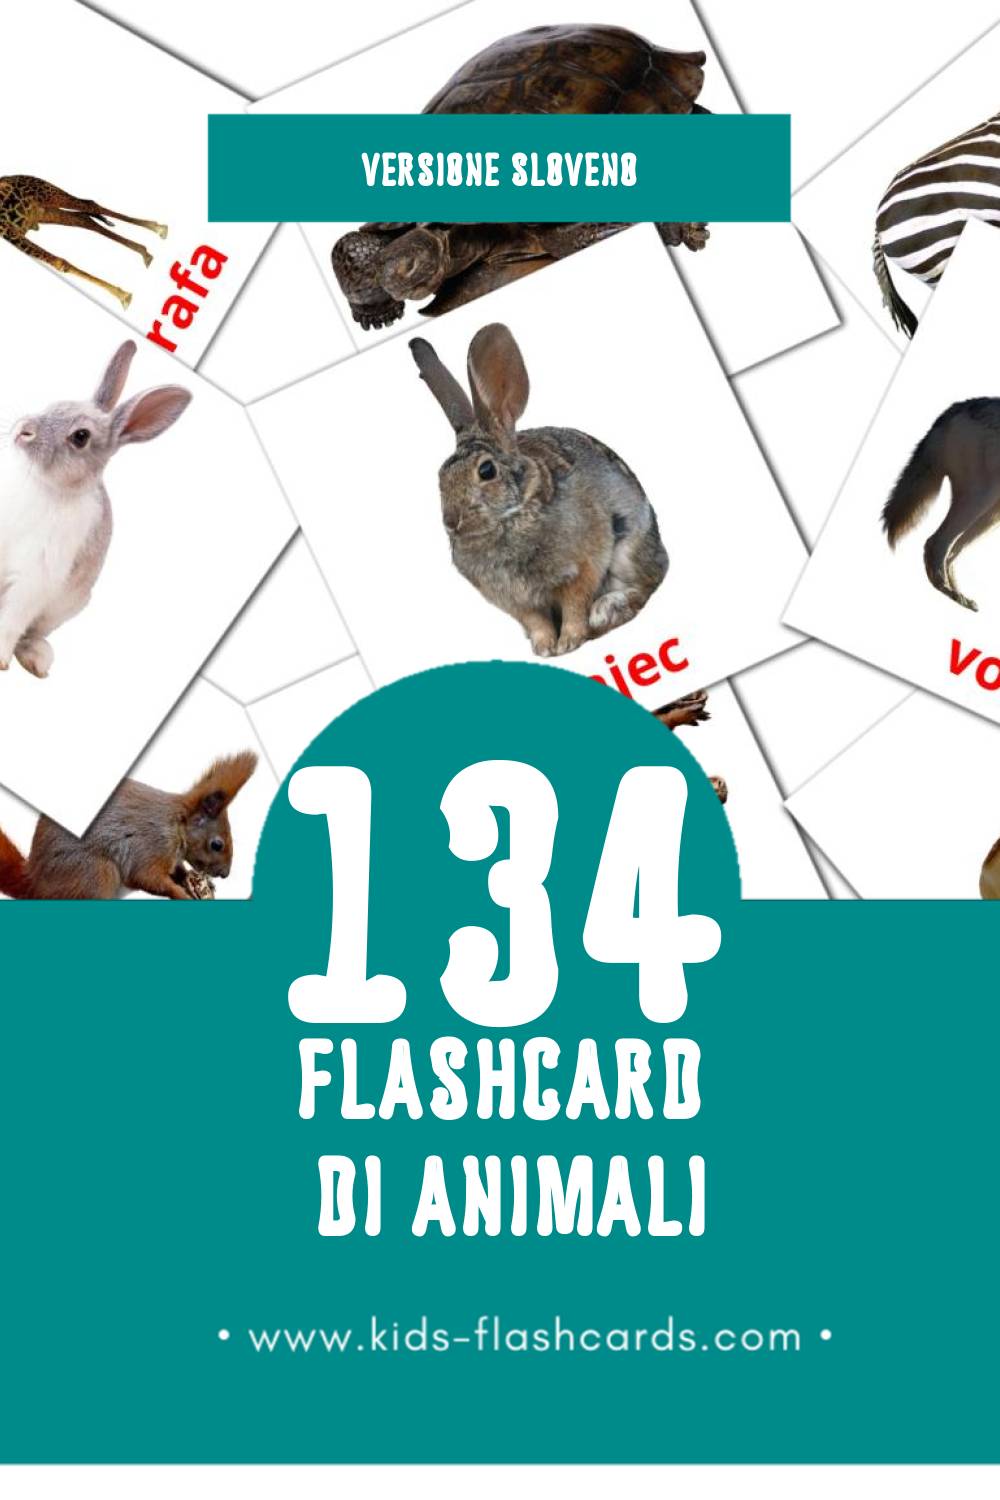 Schede visive sugli Živali per bambini (134 schede in Sloveno)